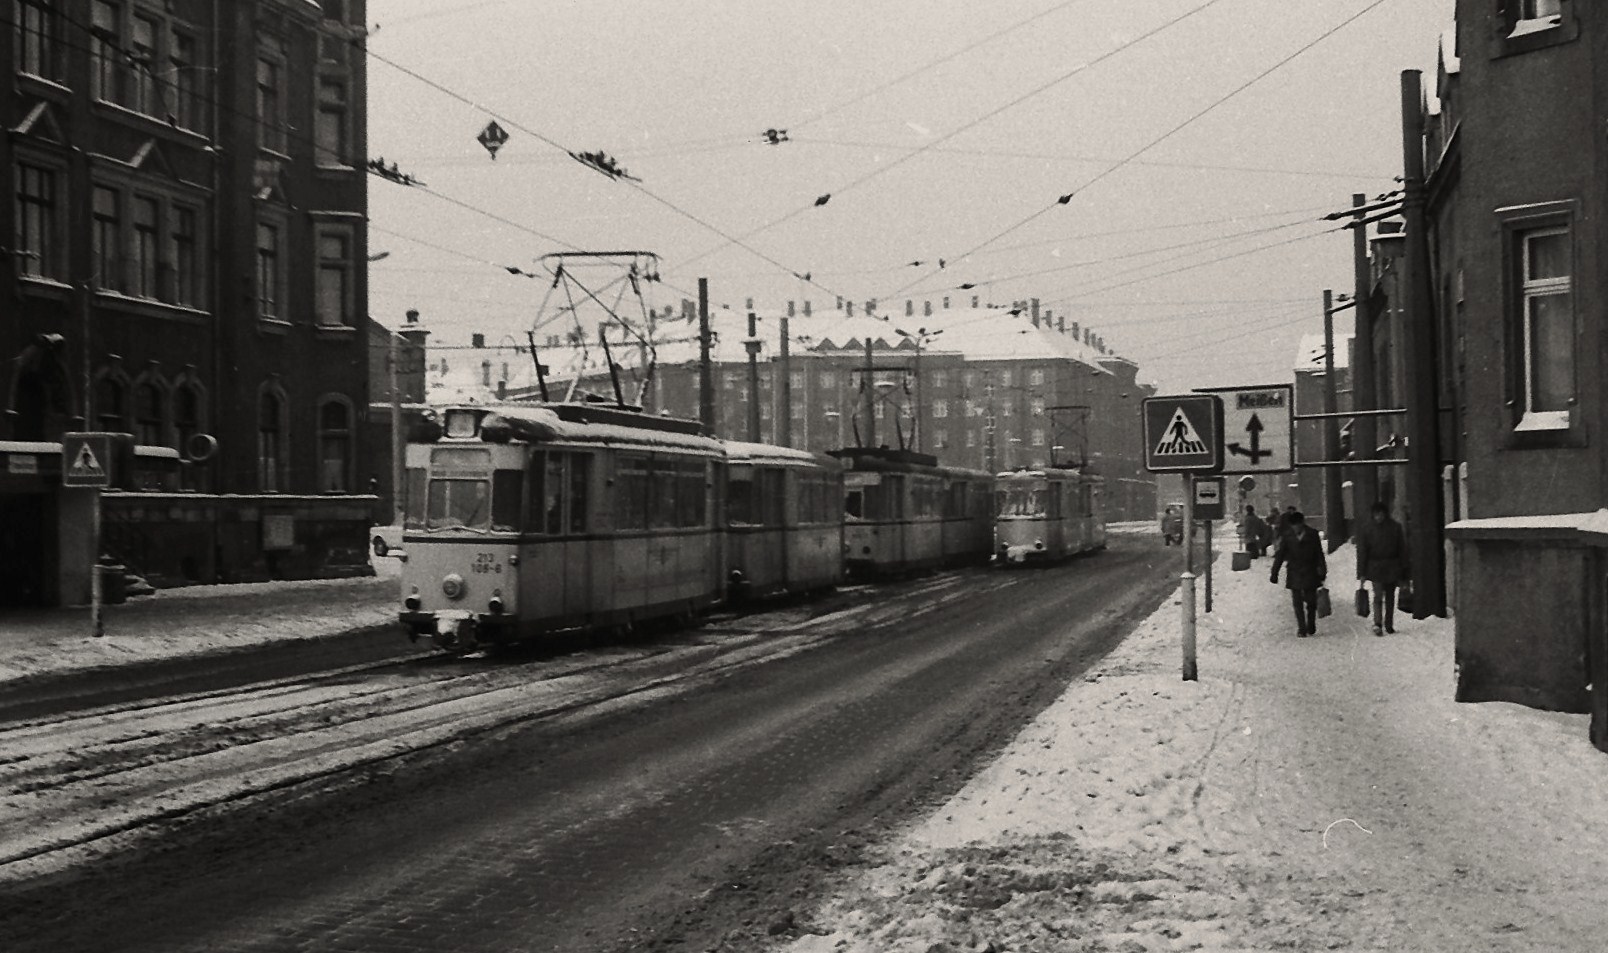 Winter 1985 in Dresden